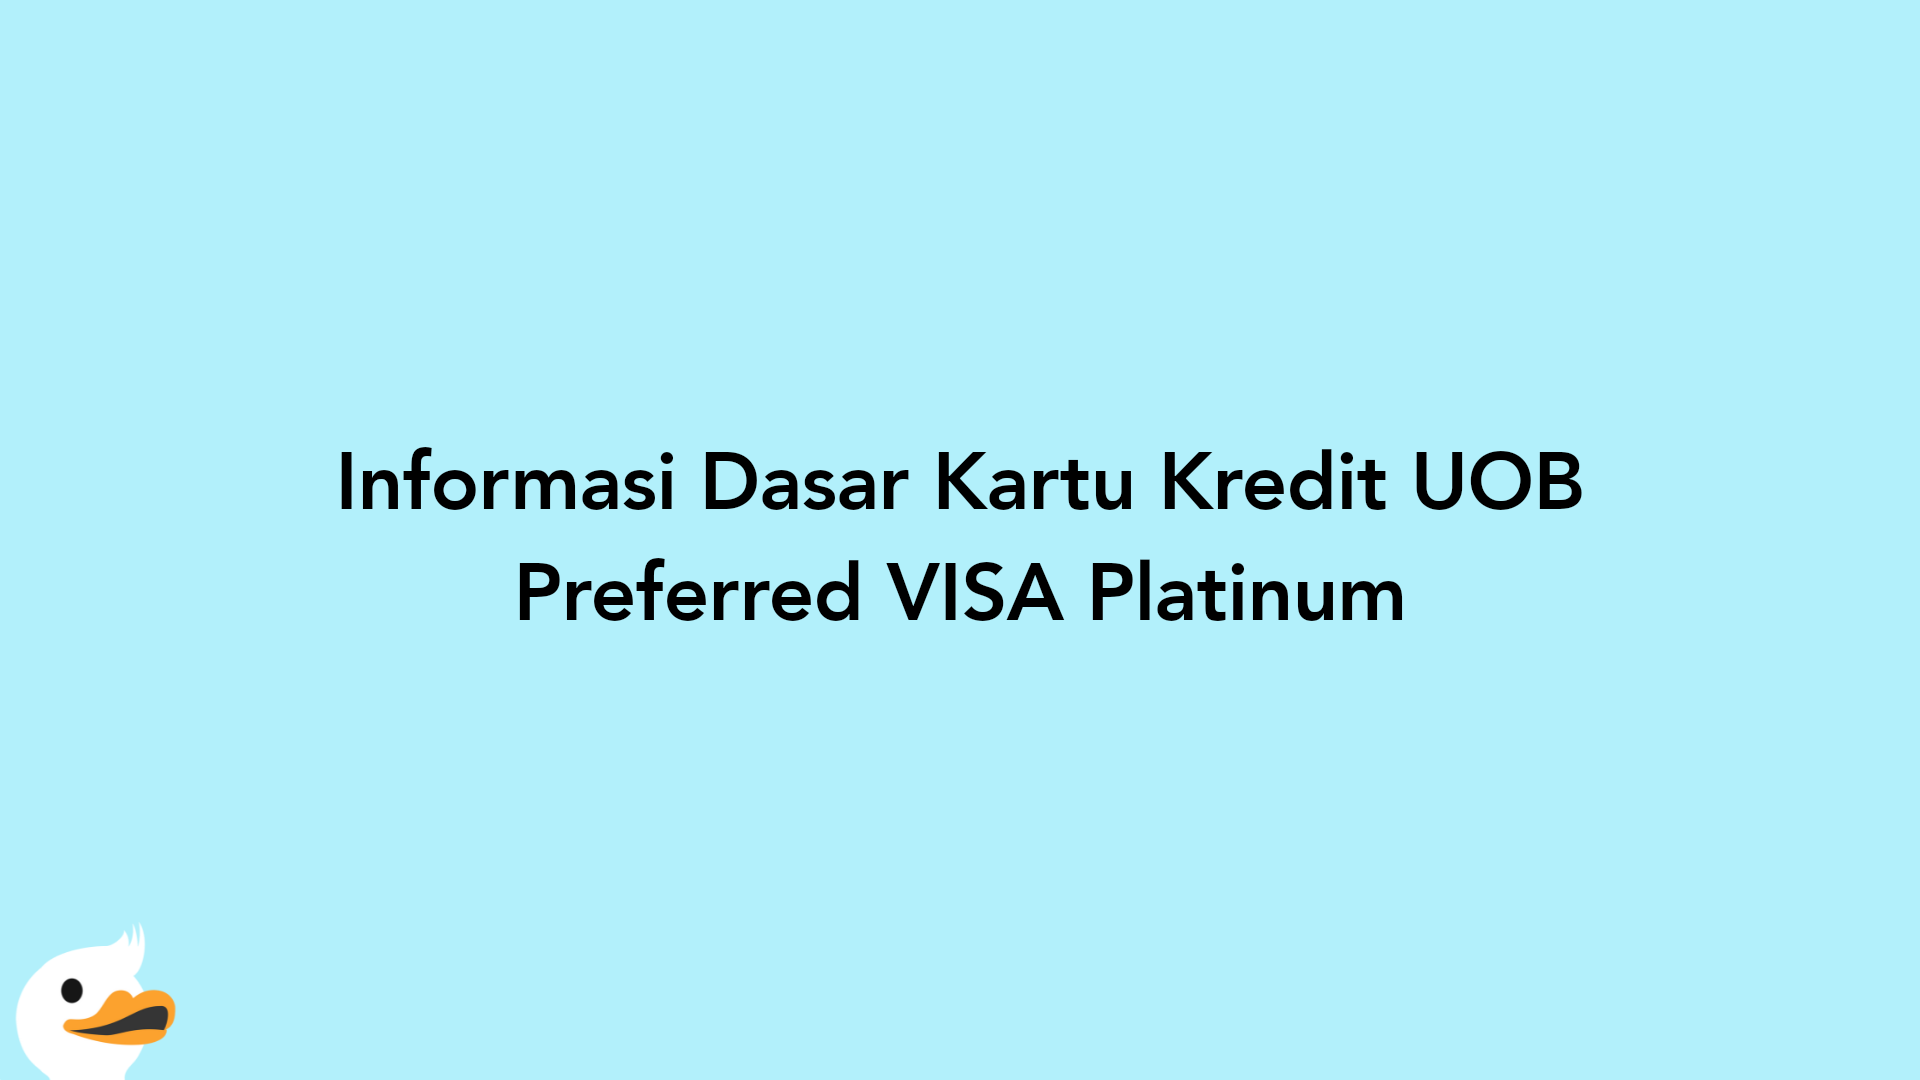 Informasi Dasar Kartu Kredit UOB Preferred VISA Platinum